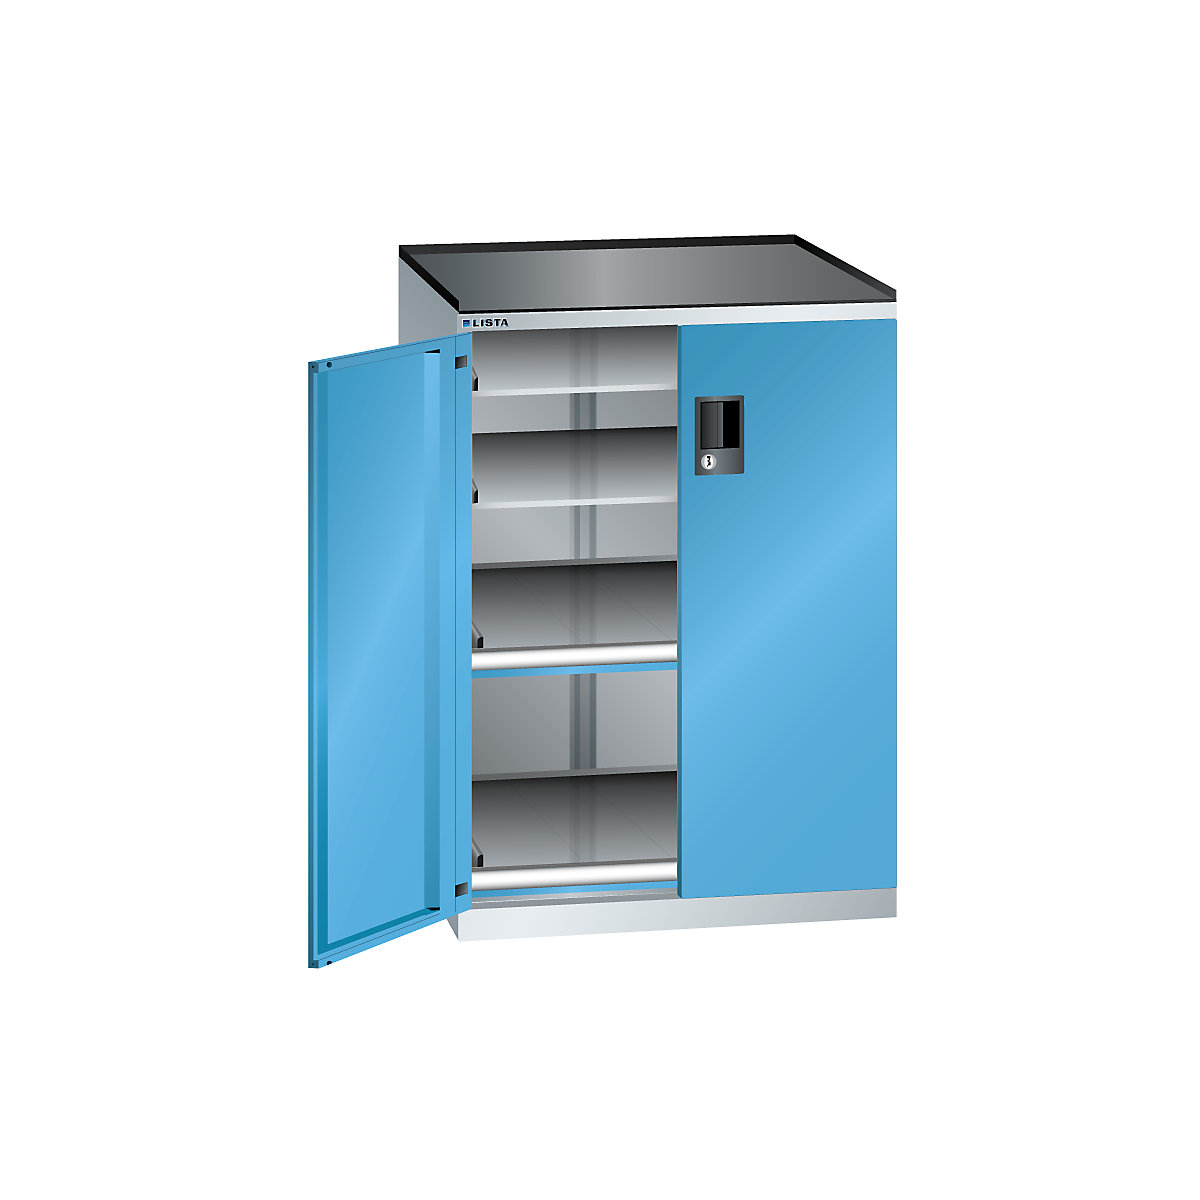 Armoire à tiroirs à portes battantes – LISTA, hauteur 1020 mm, 4 tablettes, charge max. 200 kg, gris clair / bleu clair-1